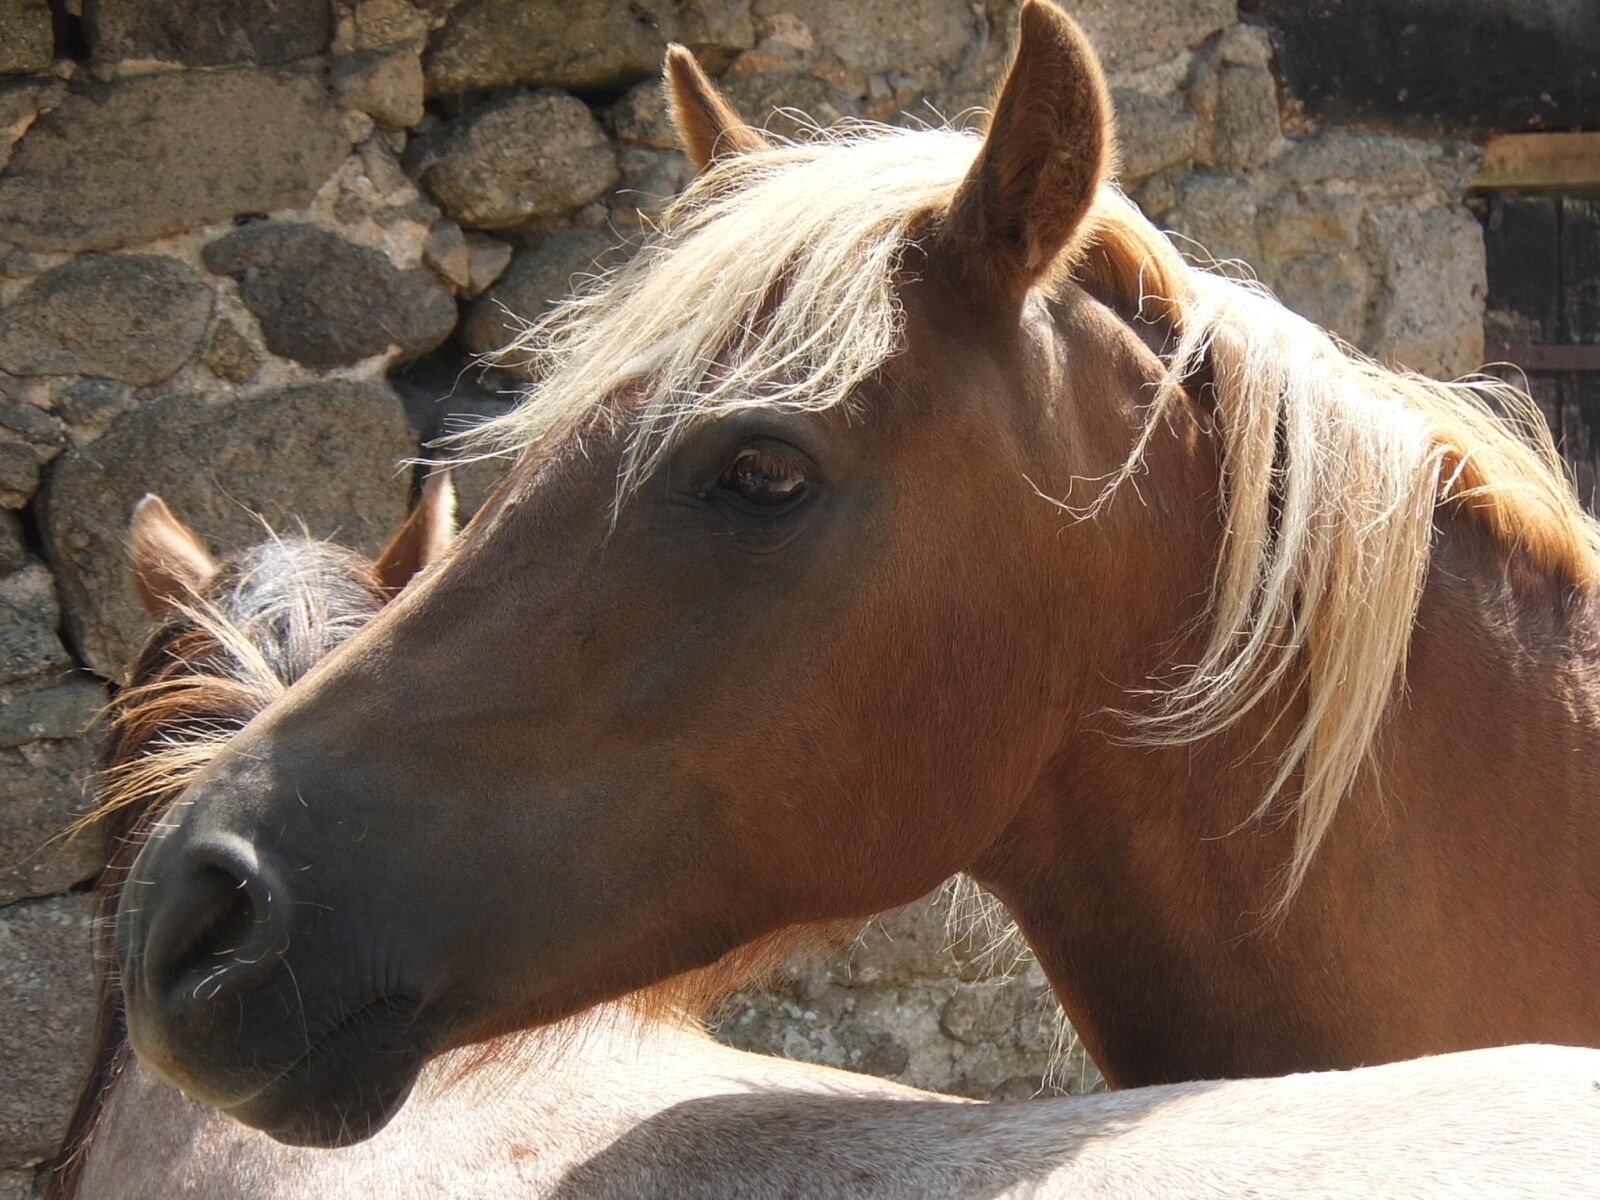 Fujifilm XF1 sample photo. Horse, head, horse head photography